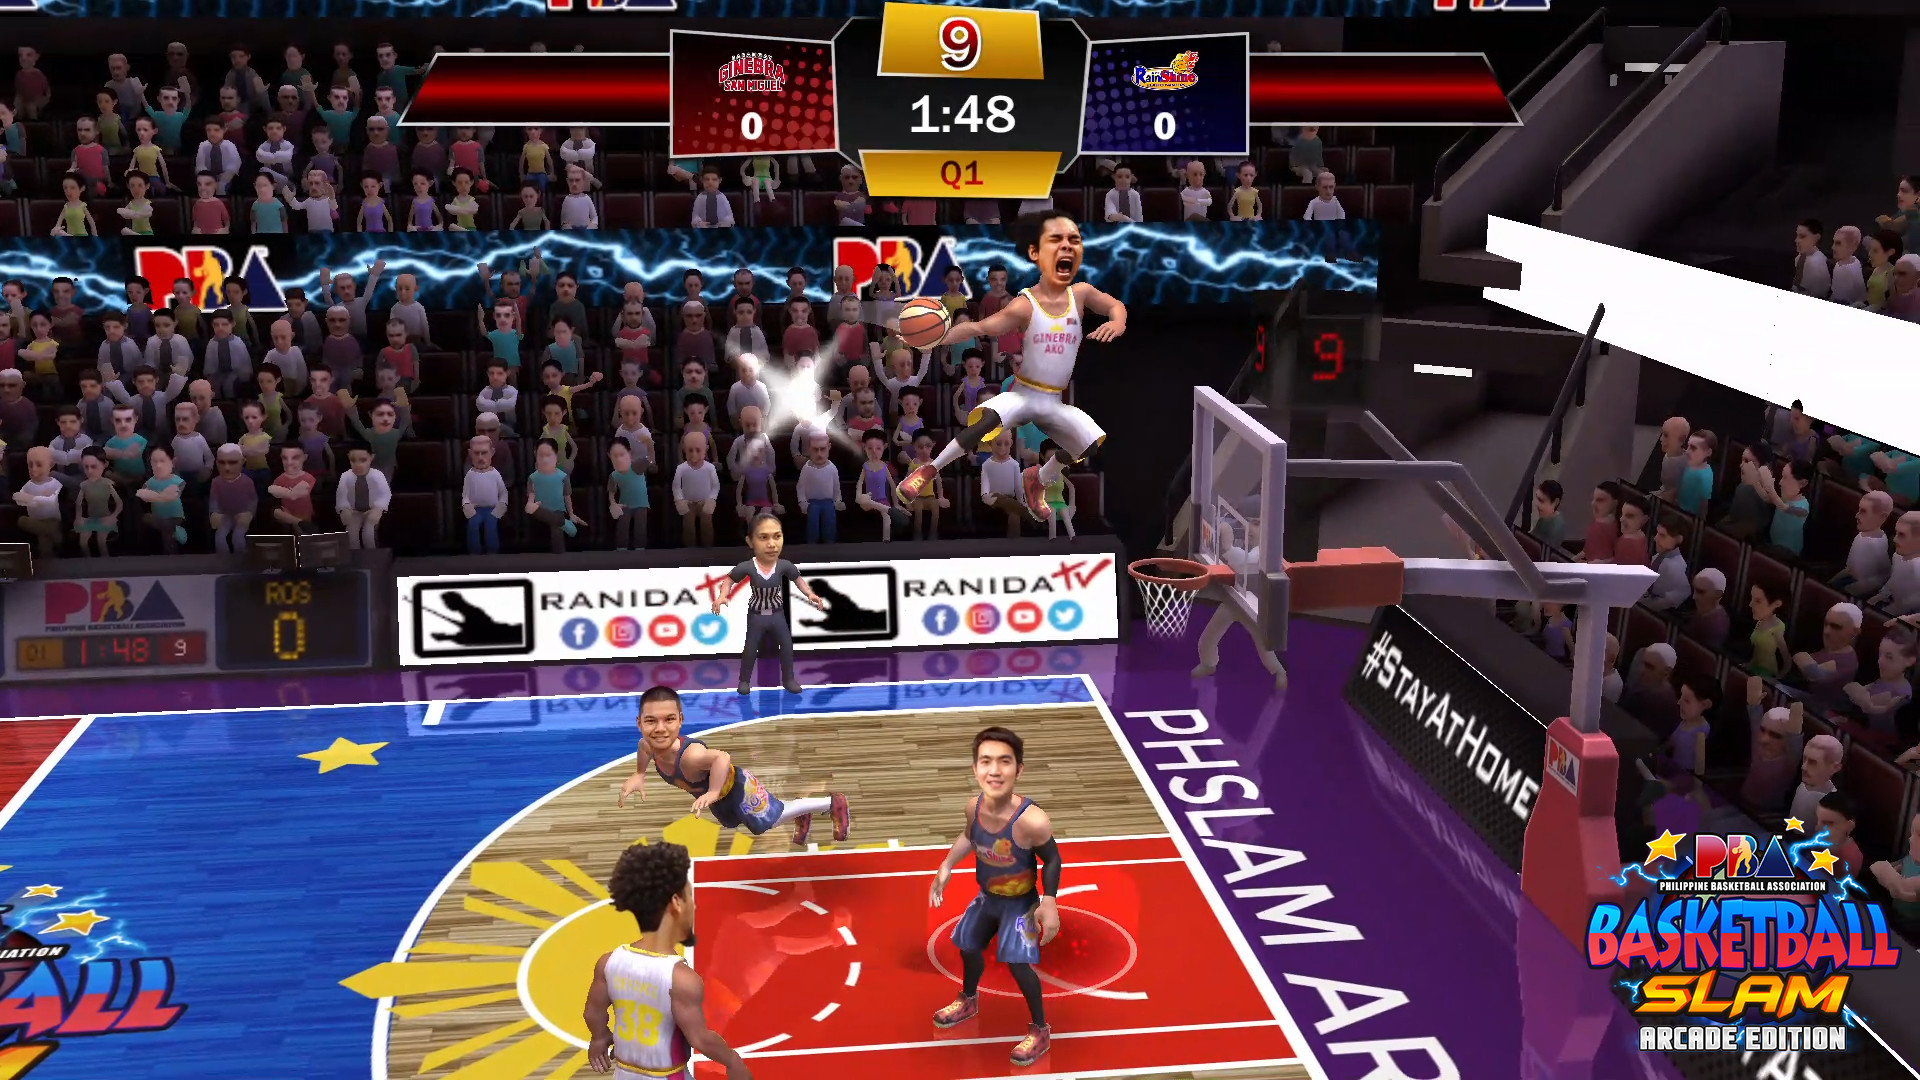 PBA Basketball Slam Arcade Edition On Steam